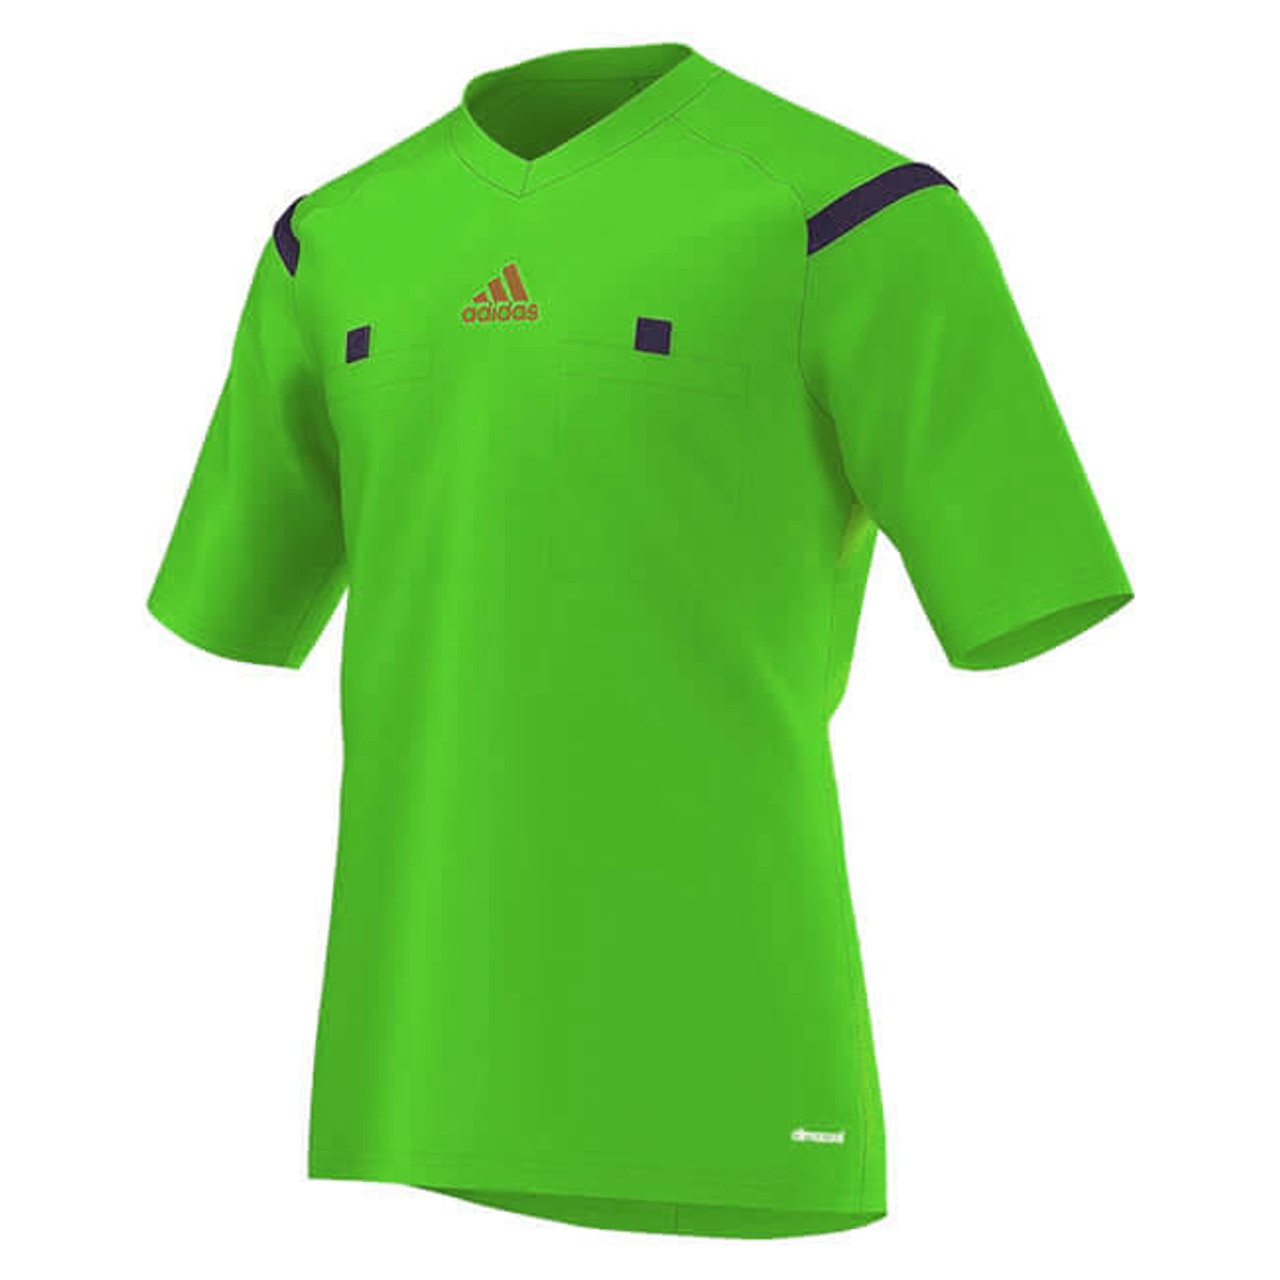 2014 Adidas Referee Jersey Short Sleeve 